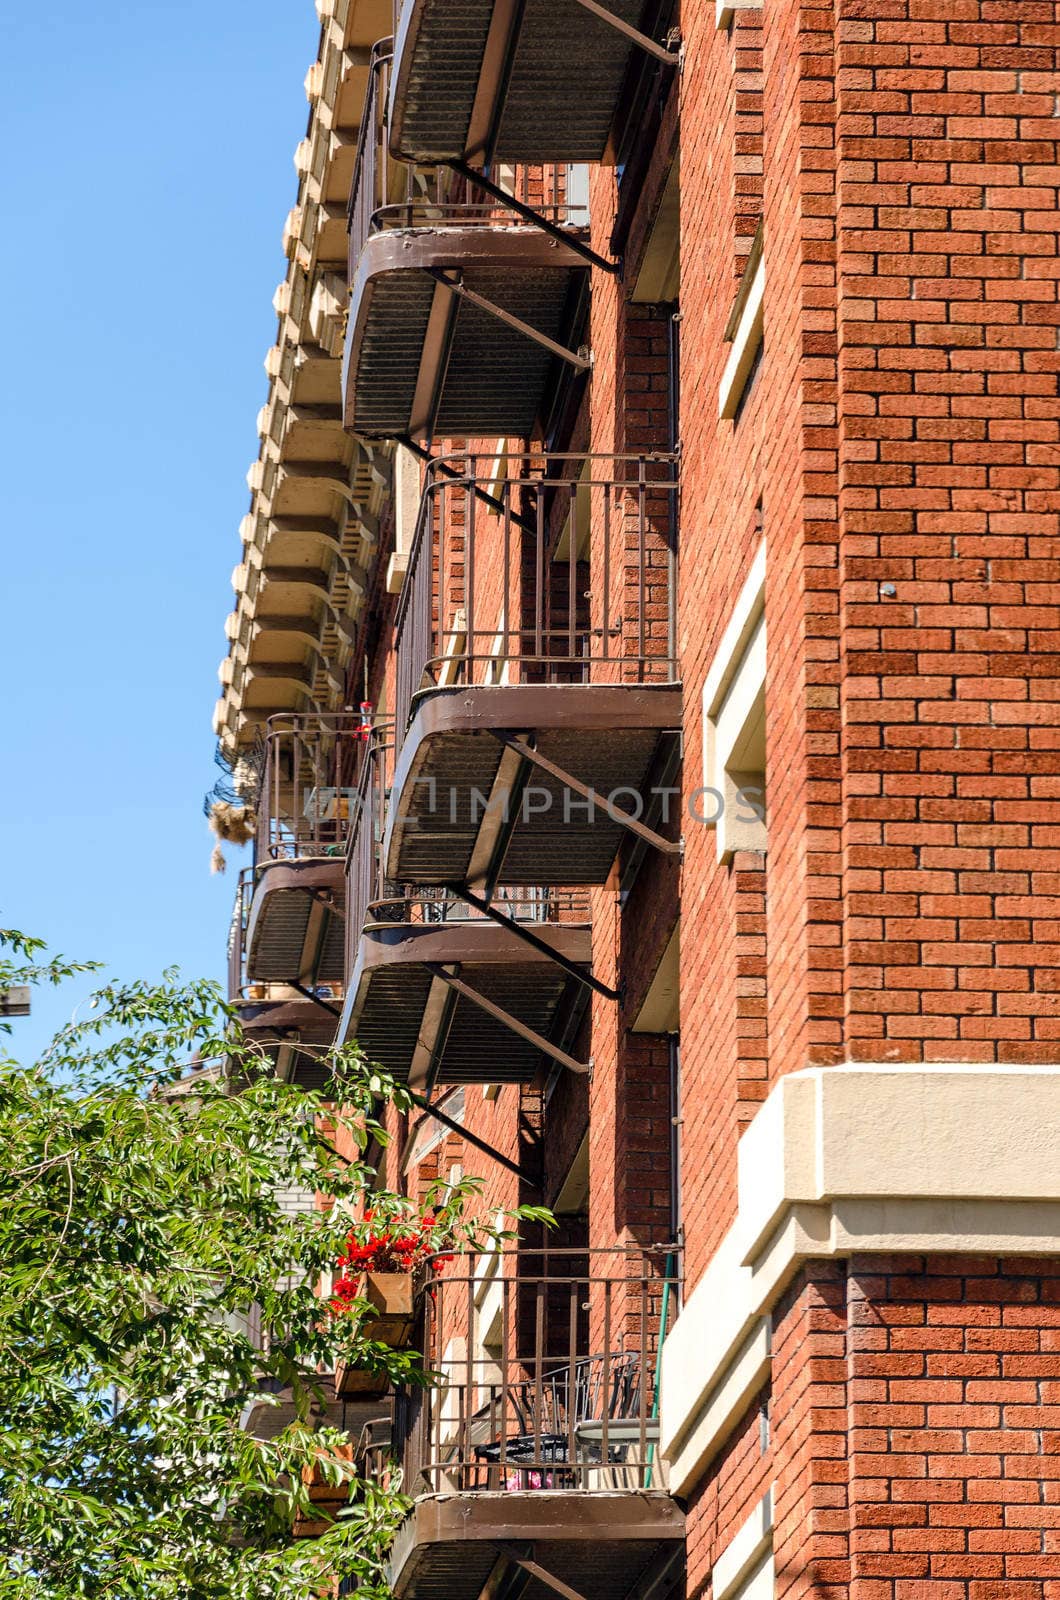 Brick building with balconies in Portland, Oregon